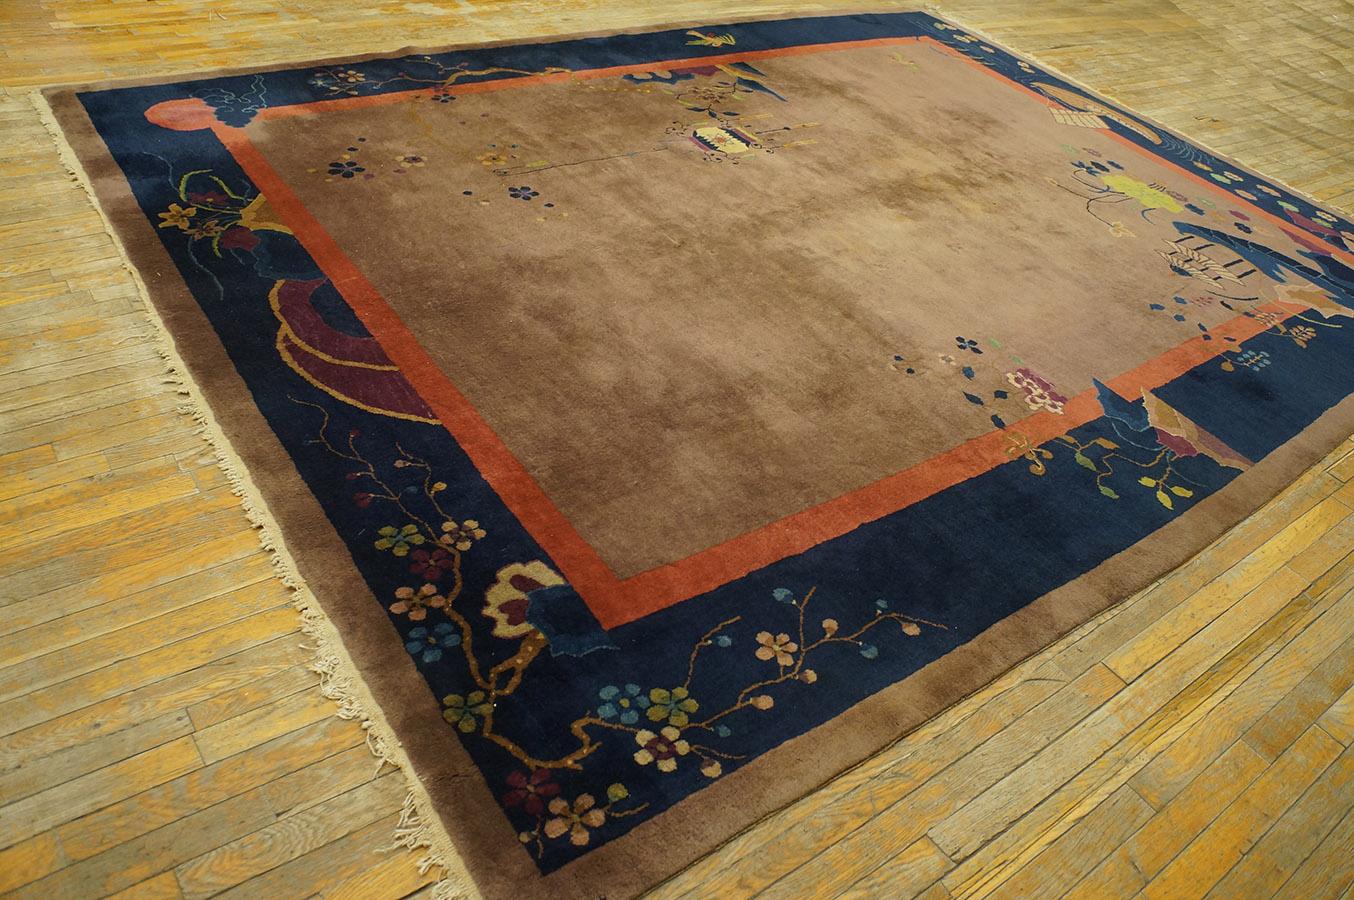 9x12 rug in cm